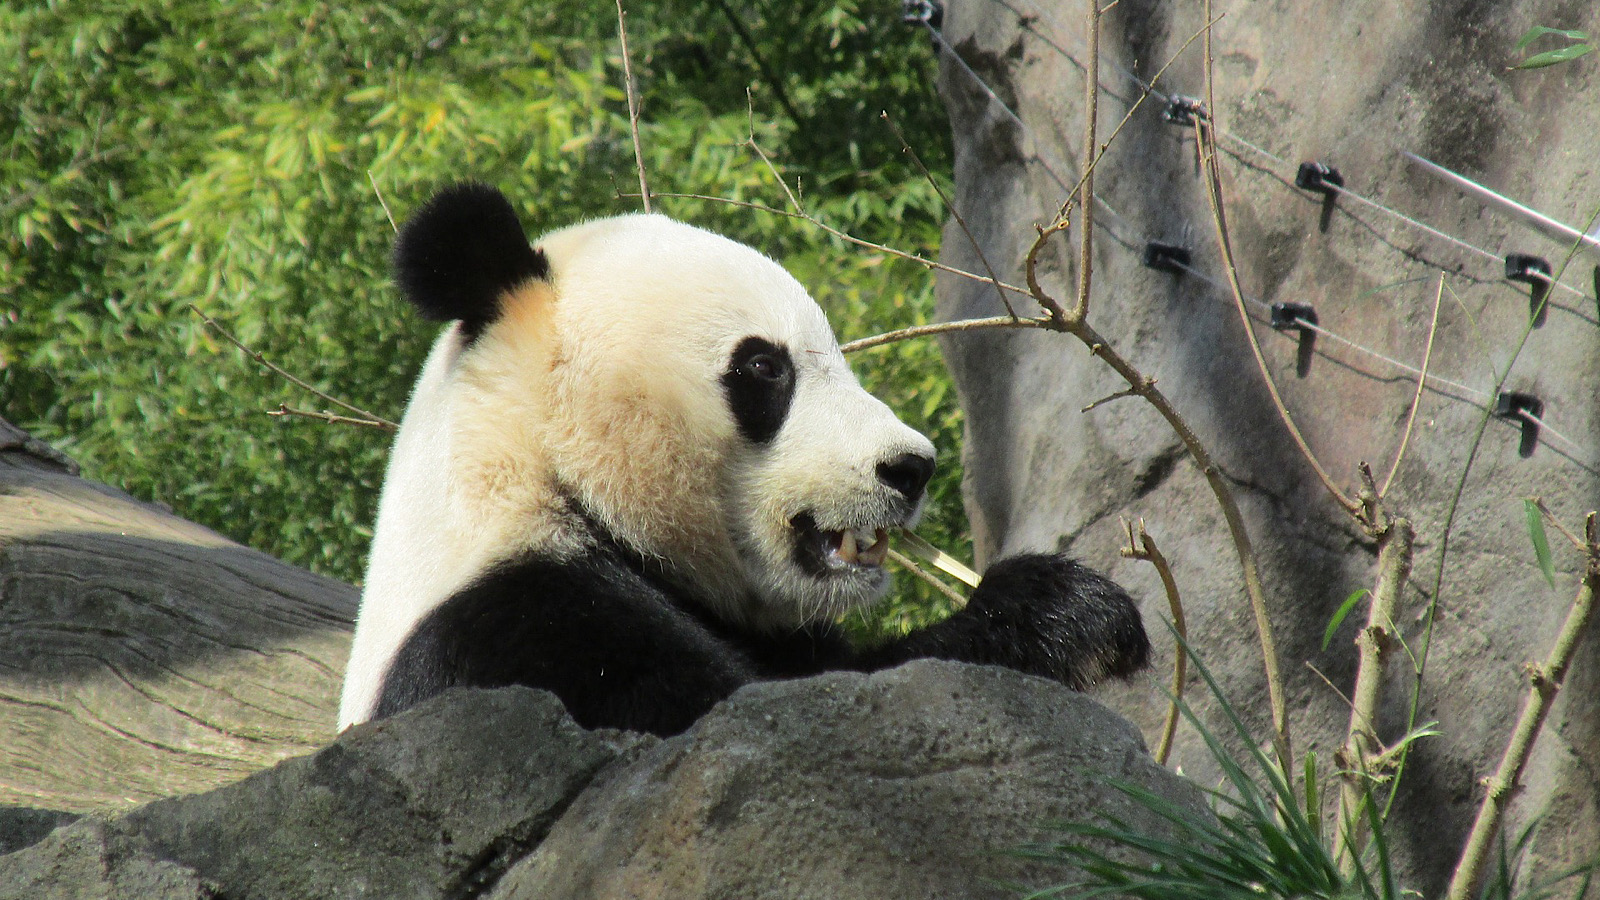 kina nuttet panda truede dyrearter